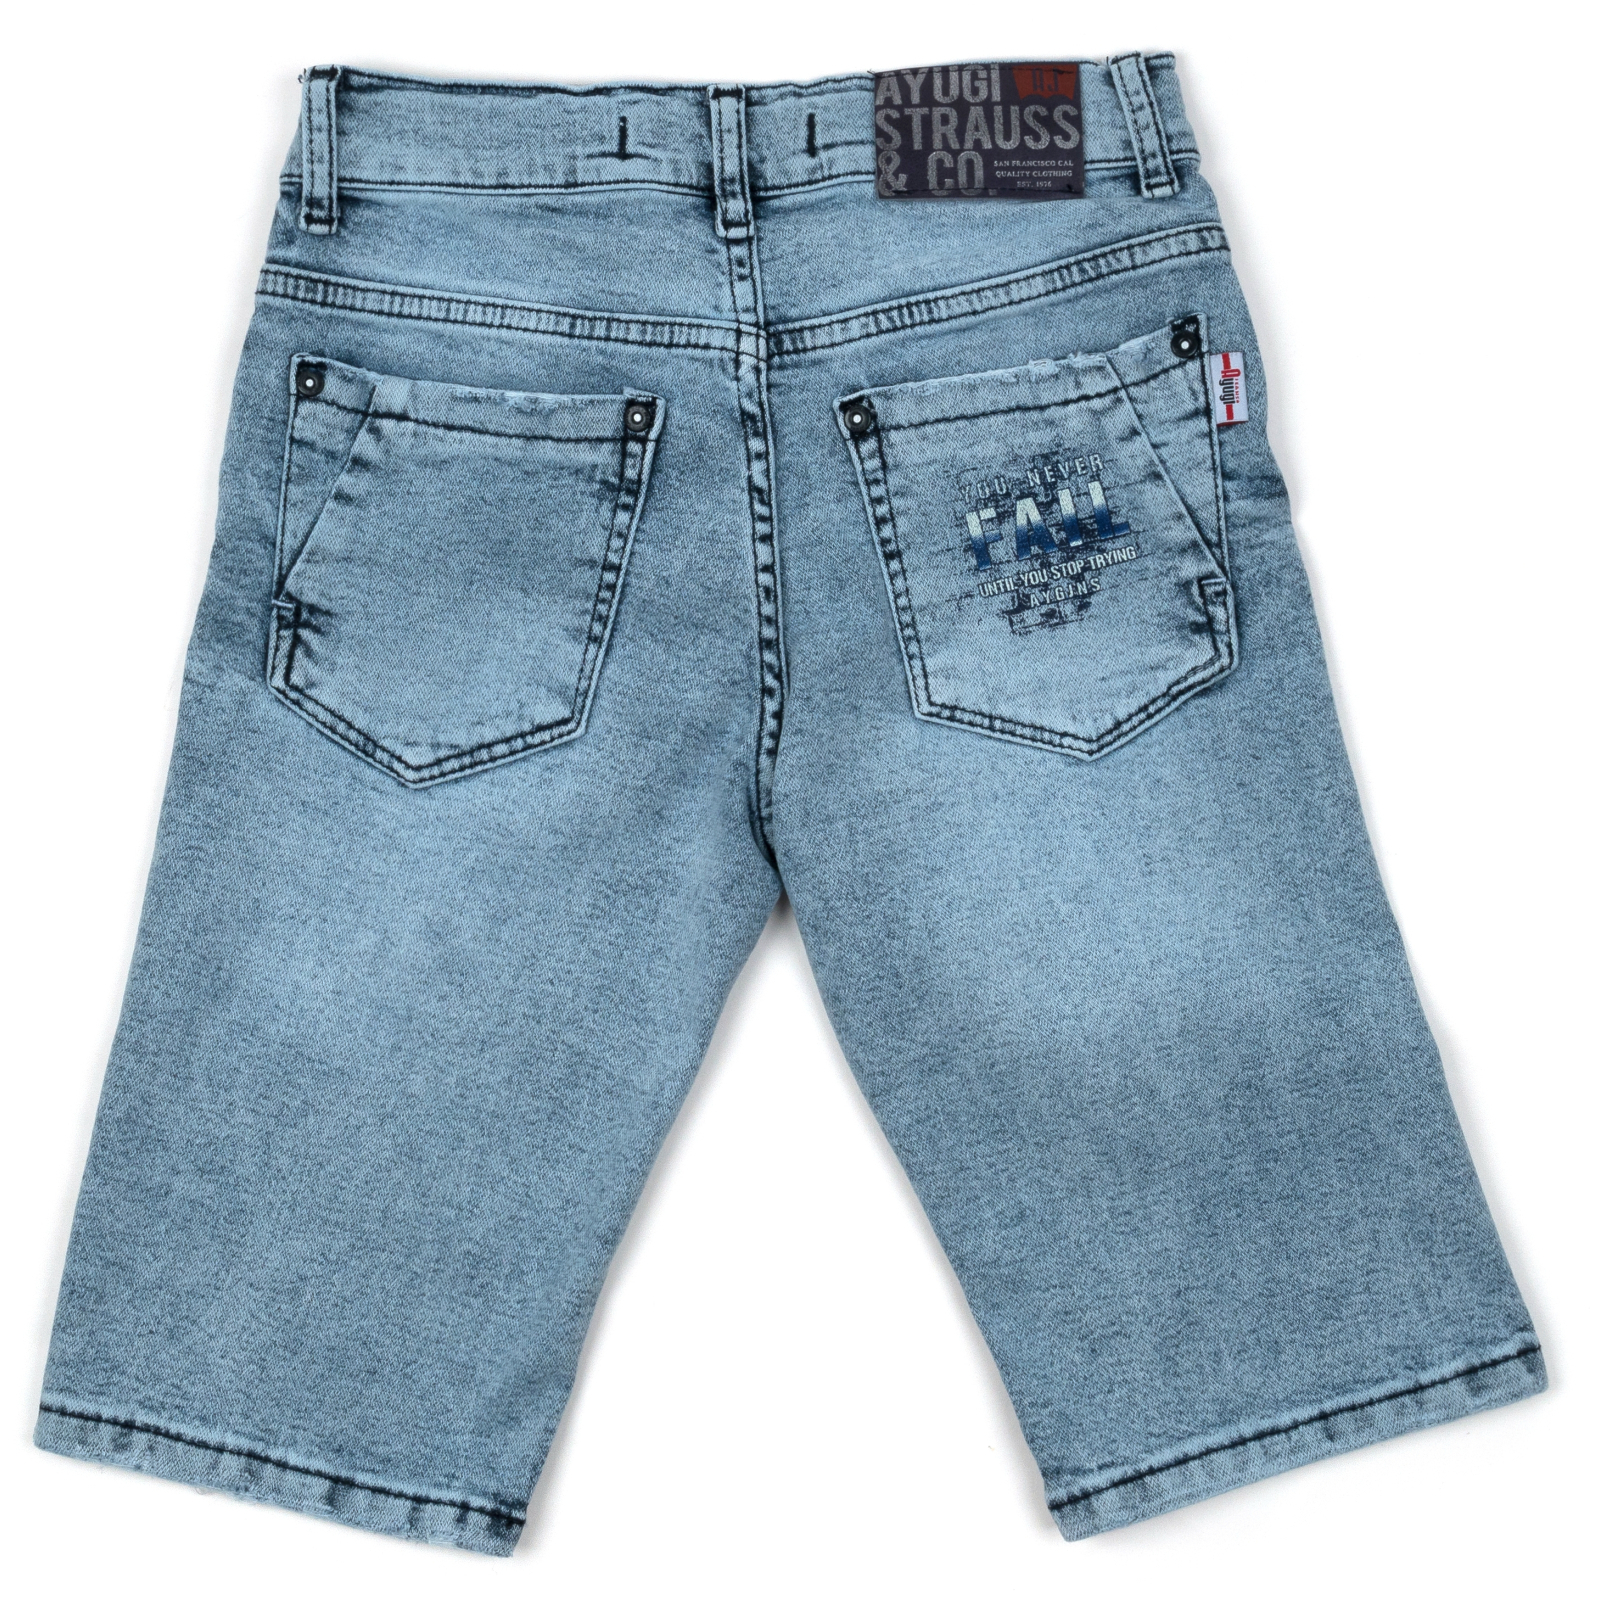 Шорты A-Yugi джинсовые (5260-158B-blue) изображение 2